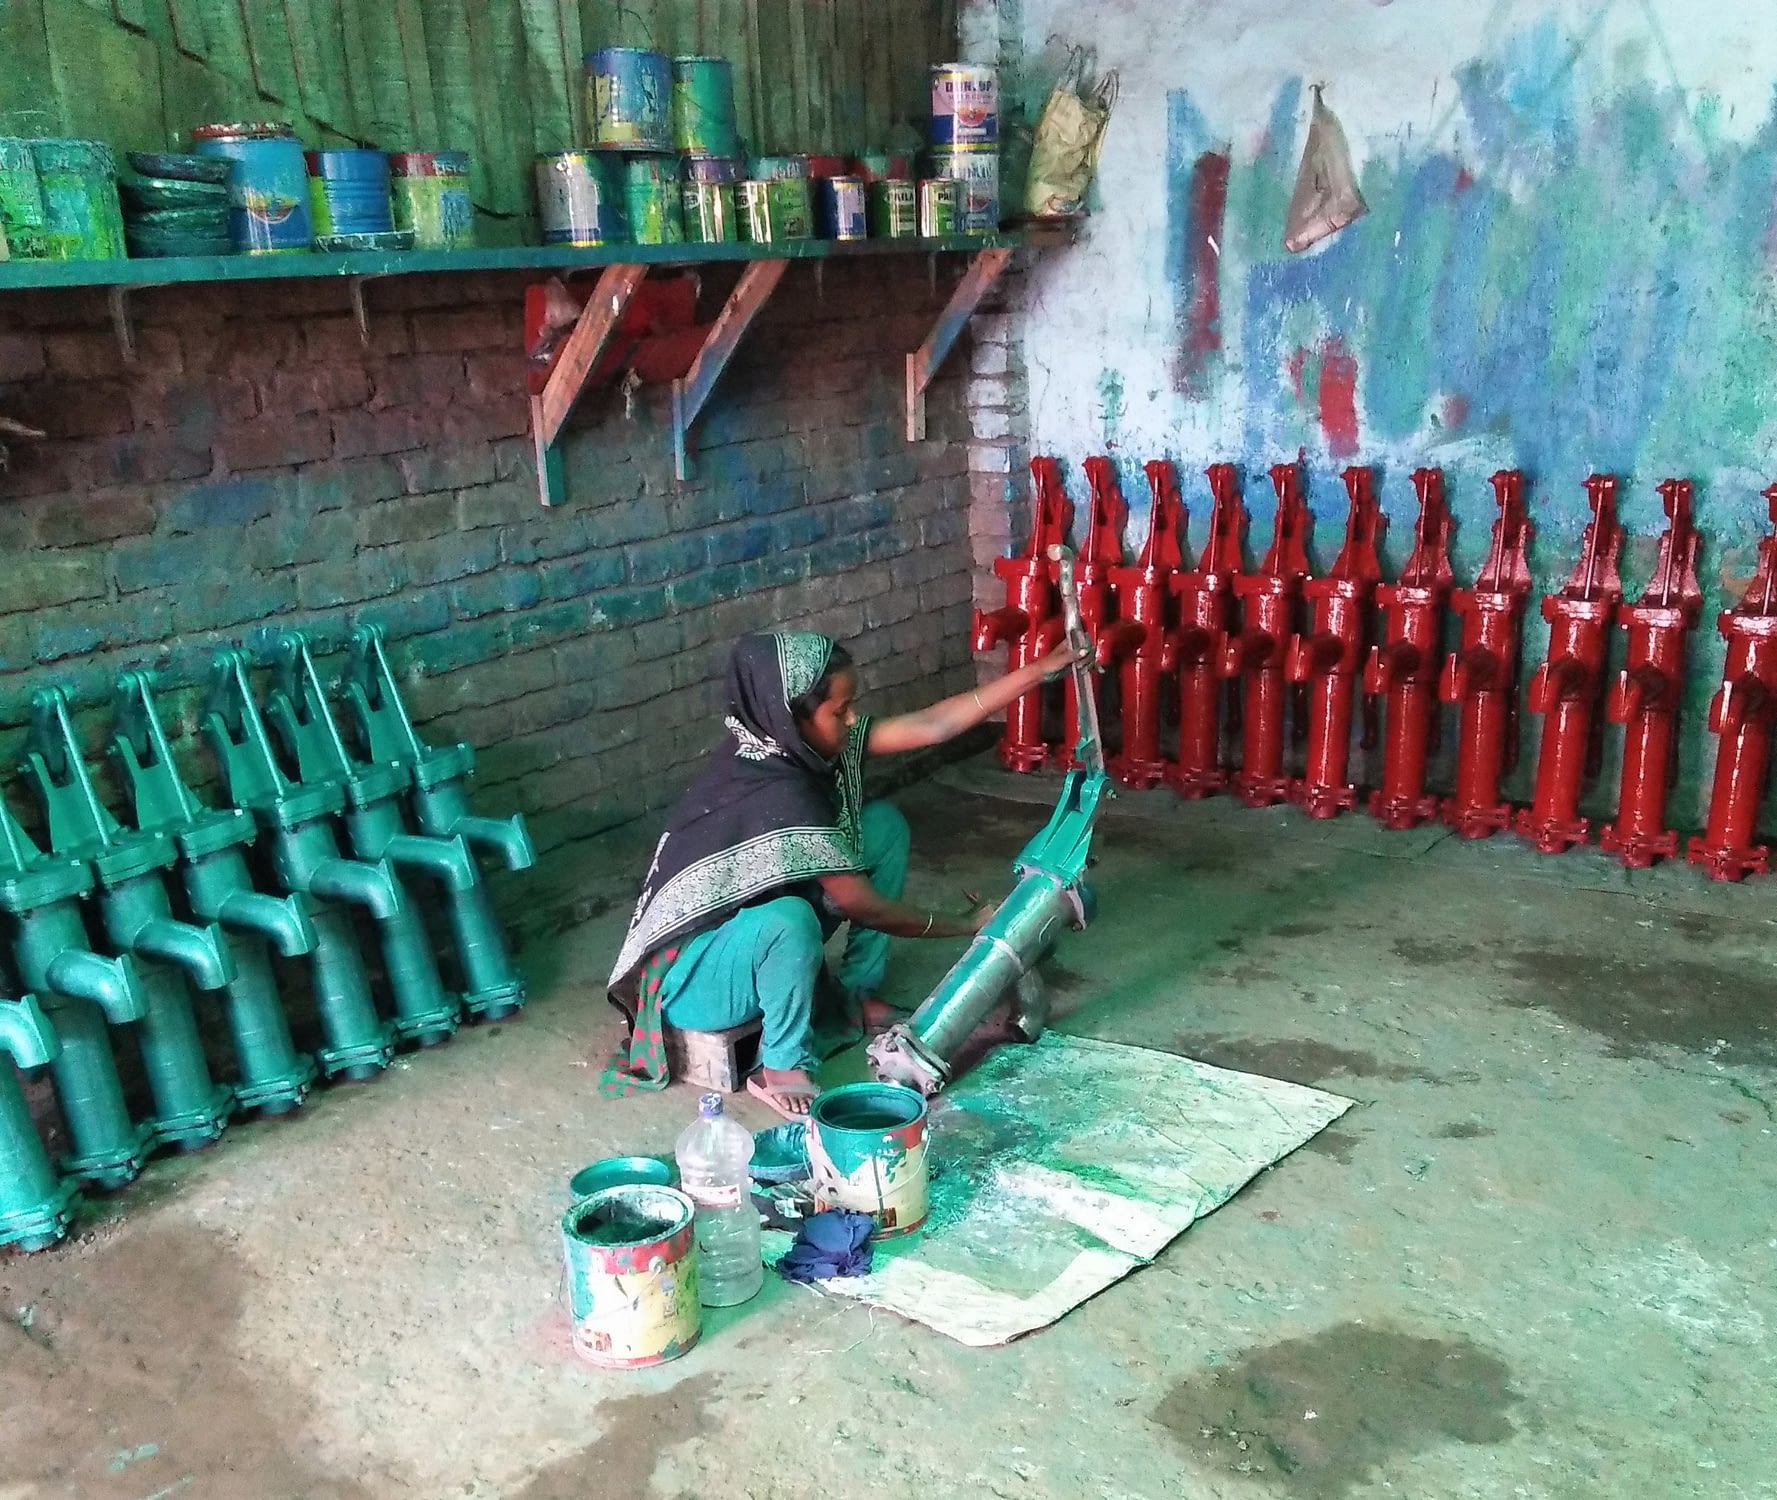 Woman paints machinery.